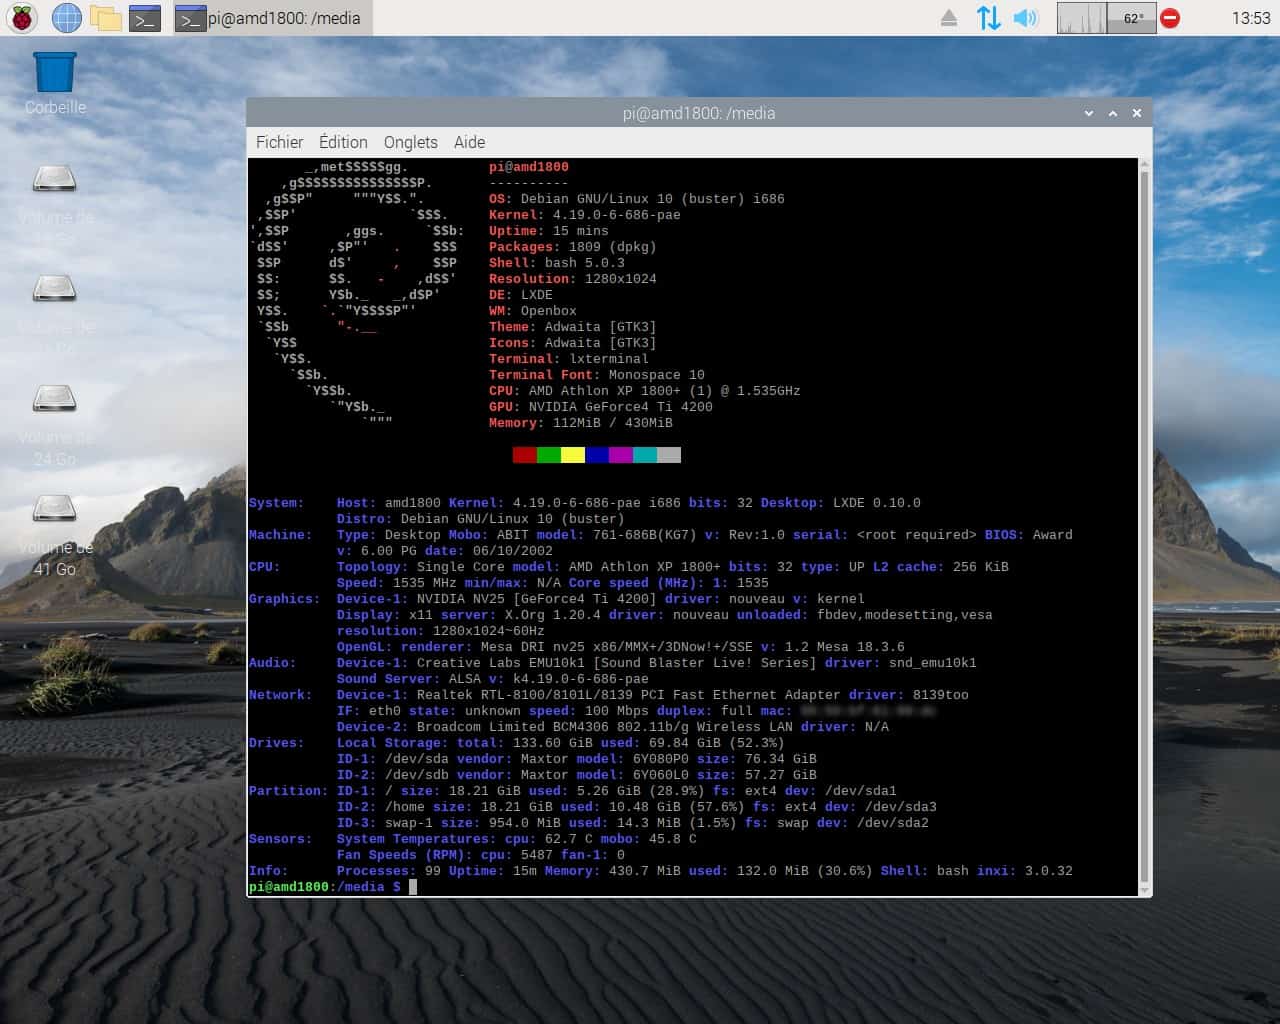 Raspberry Pi OS adicionou um repositório da Microsoft sem informar os usuários